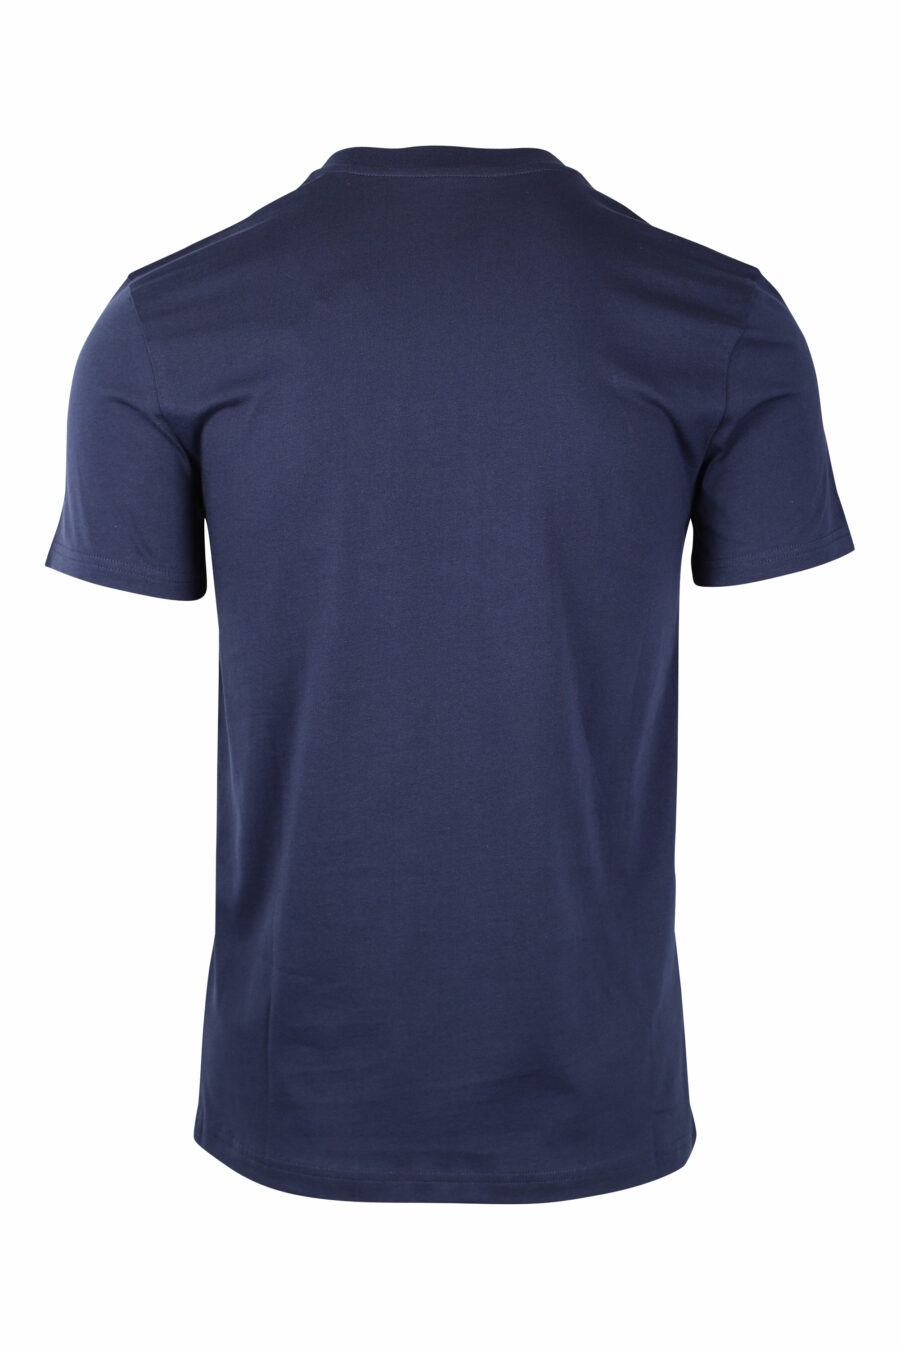 Camiseta azul oscura con maxilogo doble pregunta monocromático - IMG 1454